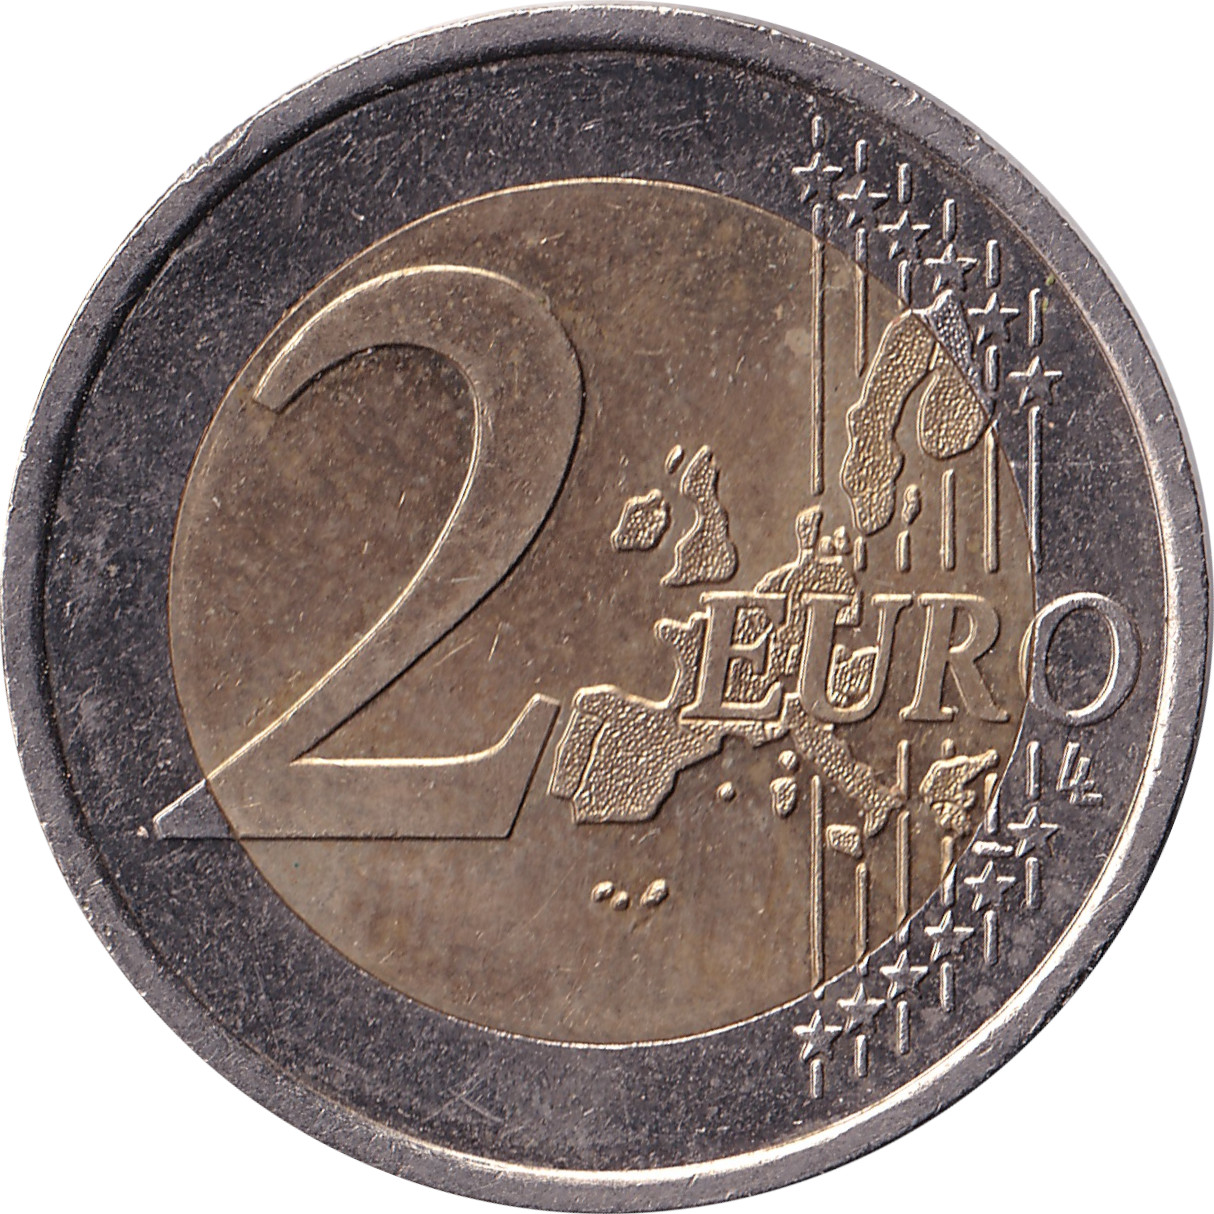 2 euro - Rainier III